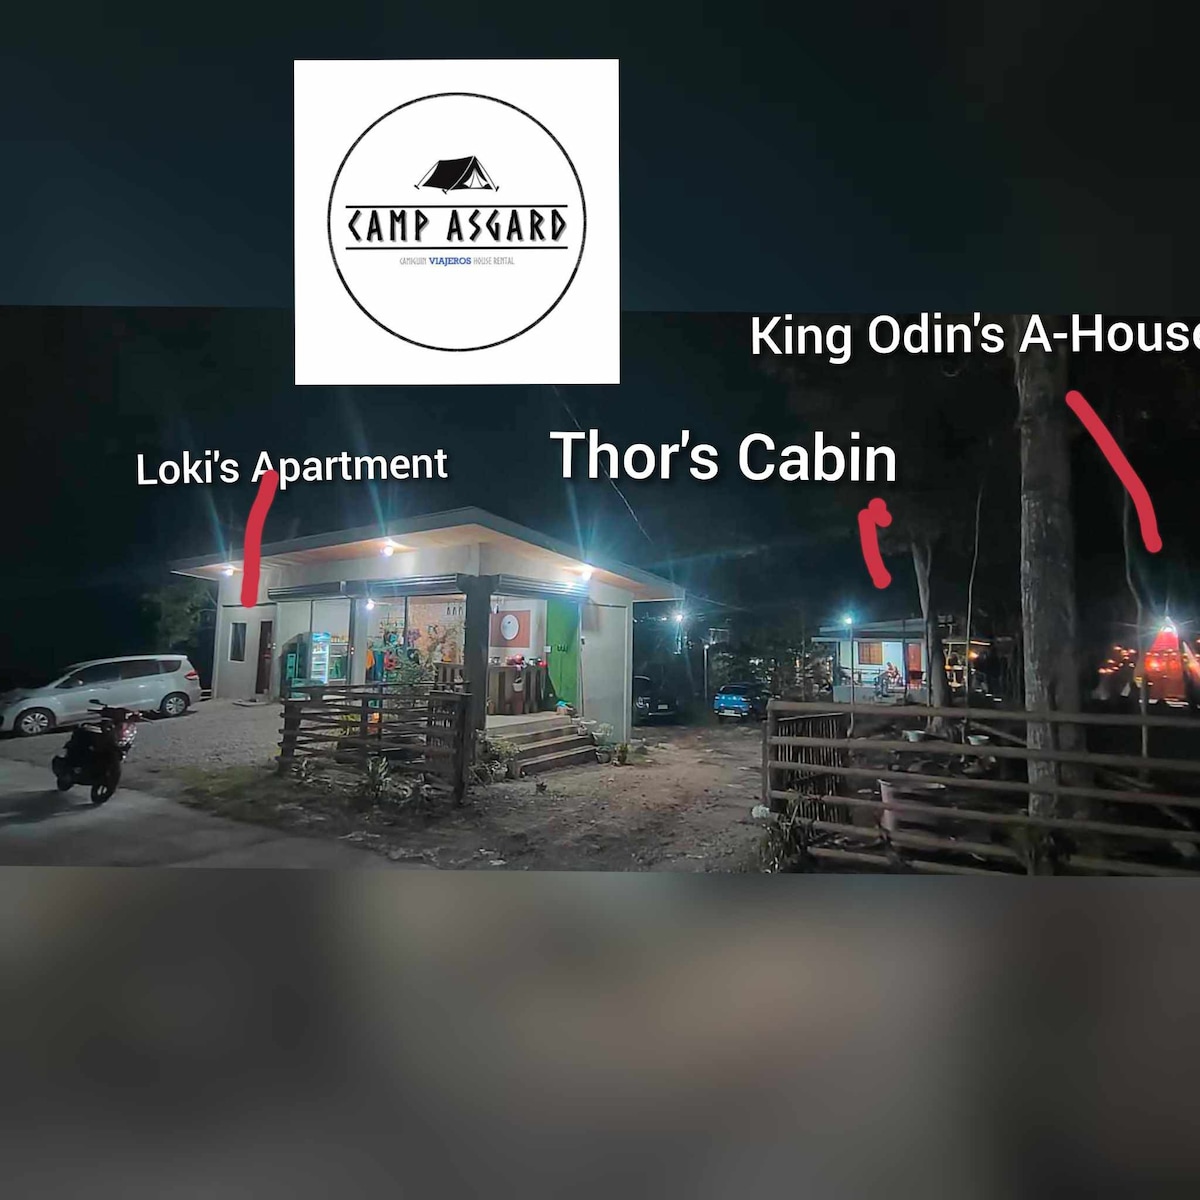 King Odin 's A-House